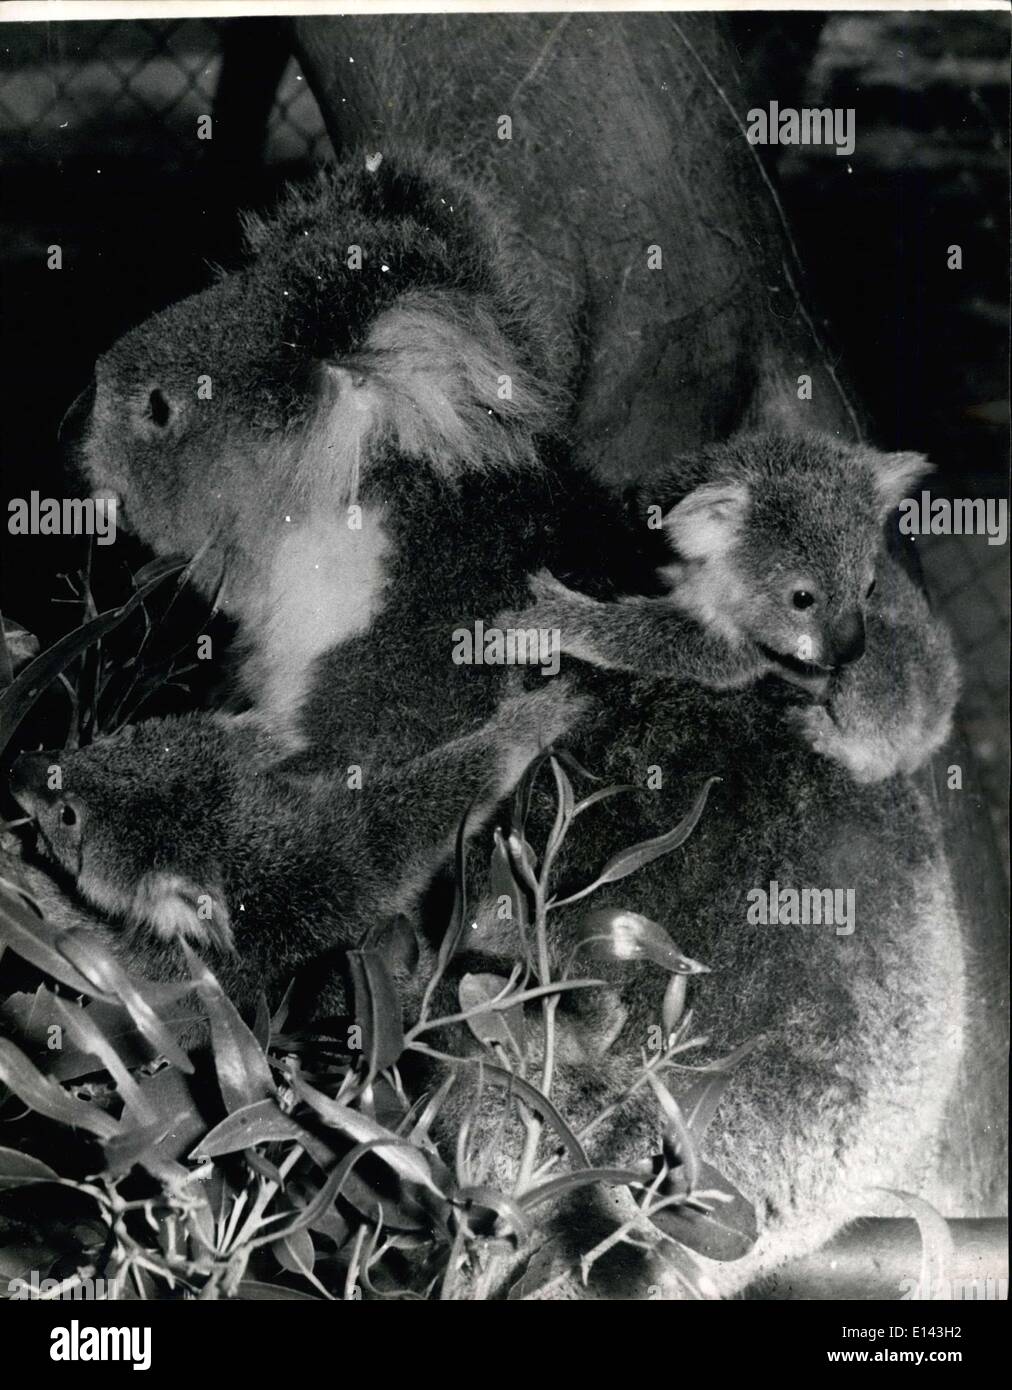 Mar 31, 2012 - raro Koala gemelli, in Australia: Maria, un bambino di 8 anni, Koala visto in mostra il suo twin koala. I gemelli, come ancora senza nome, sono i primi ad essere nato al Parco Nazionale di Yanchep Riserva, circa 40 miglia a nord di Perth e sono considerati una rarità in Australia. Maria, che era anche nato a Yanchep, ha avuto due precedenti Koala per neonati. I gemelli sono 9 mesi di età e sono venuto fuori della loro madre della sacca per la prima volta la settimana scorsa. Parco Nazionale di Yanchep soprintendente riserva il sig. John Dale detto: ''uno era riluttante a venire fuori di sua madre pouch Foto Stock